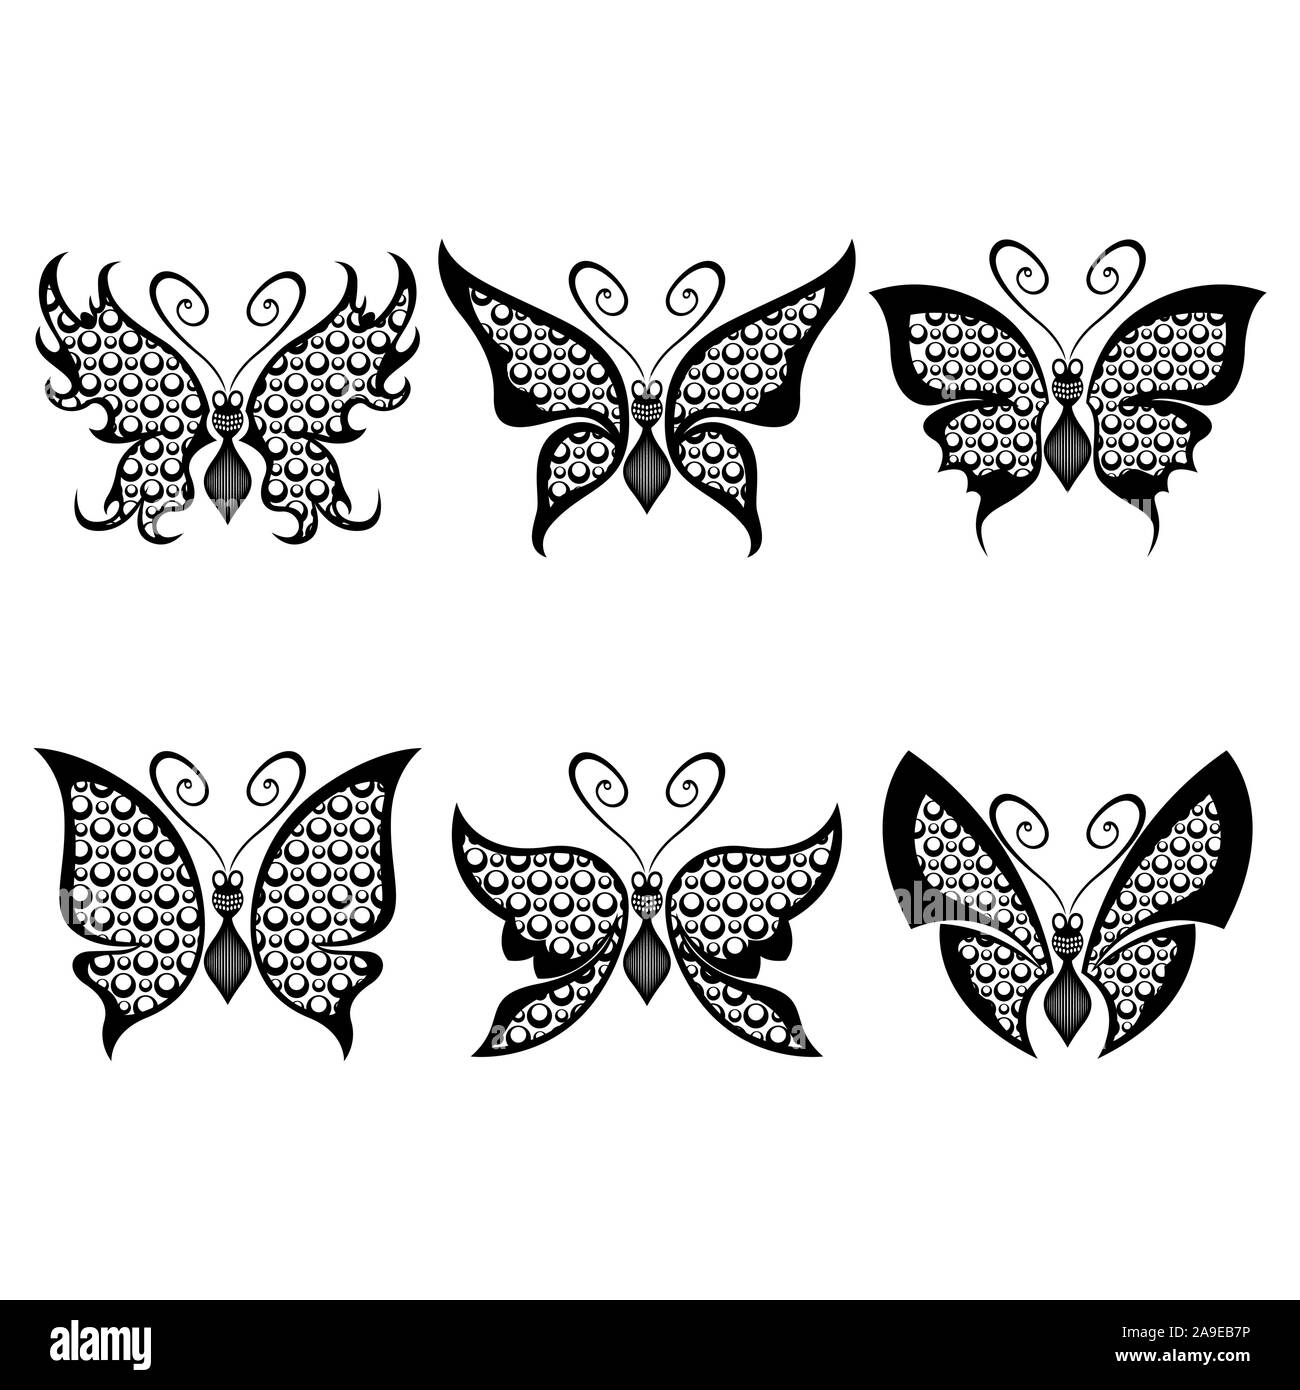 Satz von sechs Schablonen der wunderschöne Schmetterlinge mit Kreis Elemente auf einem weißen Hintergrund, von Hand zeichnen Abbildung Stock Vektor